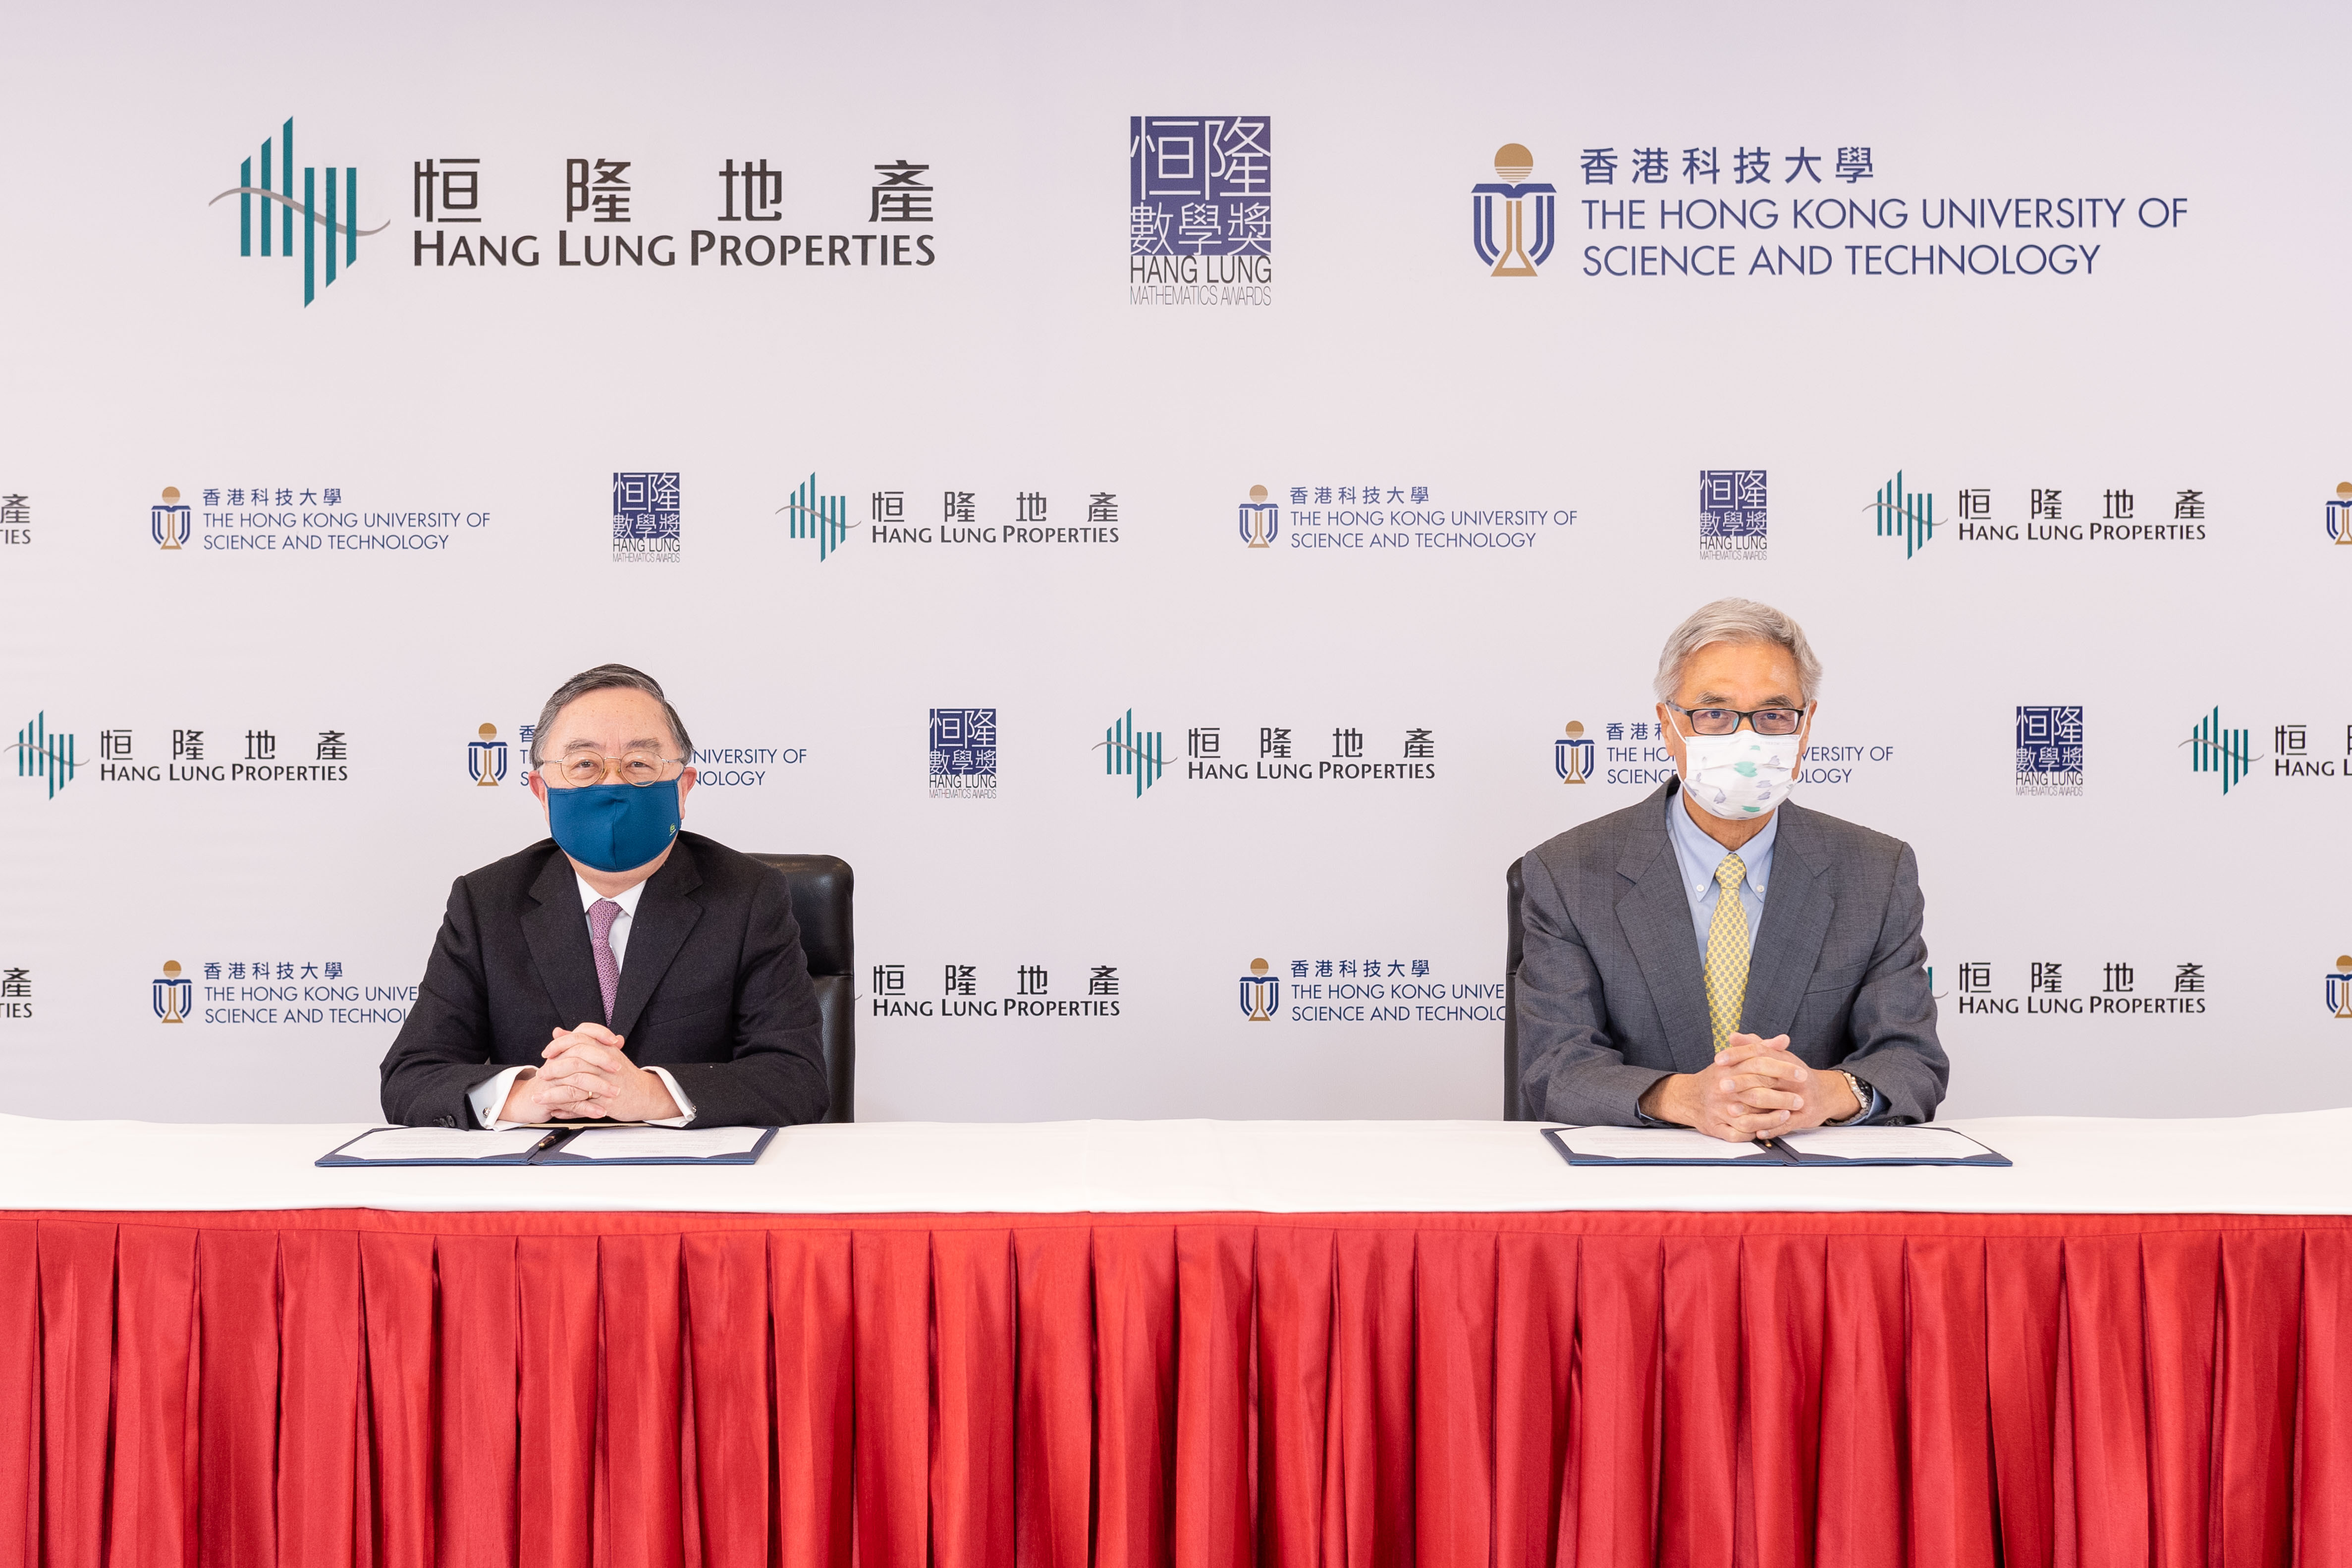 恒隆地產董事長陳啟宗先生及香港科技大學校長史維教授簽署合作協議，宣佈攜手舉辦恒隆數學獎培育本地年輕數理人才